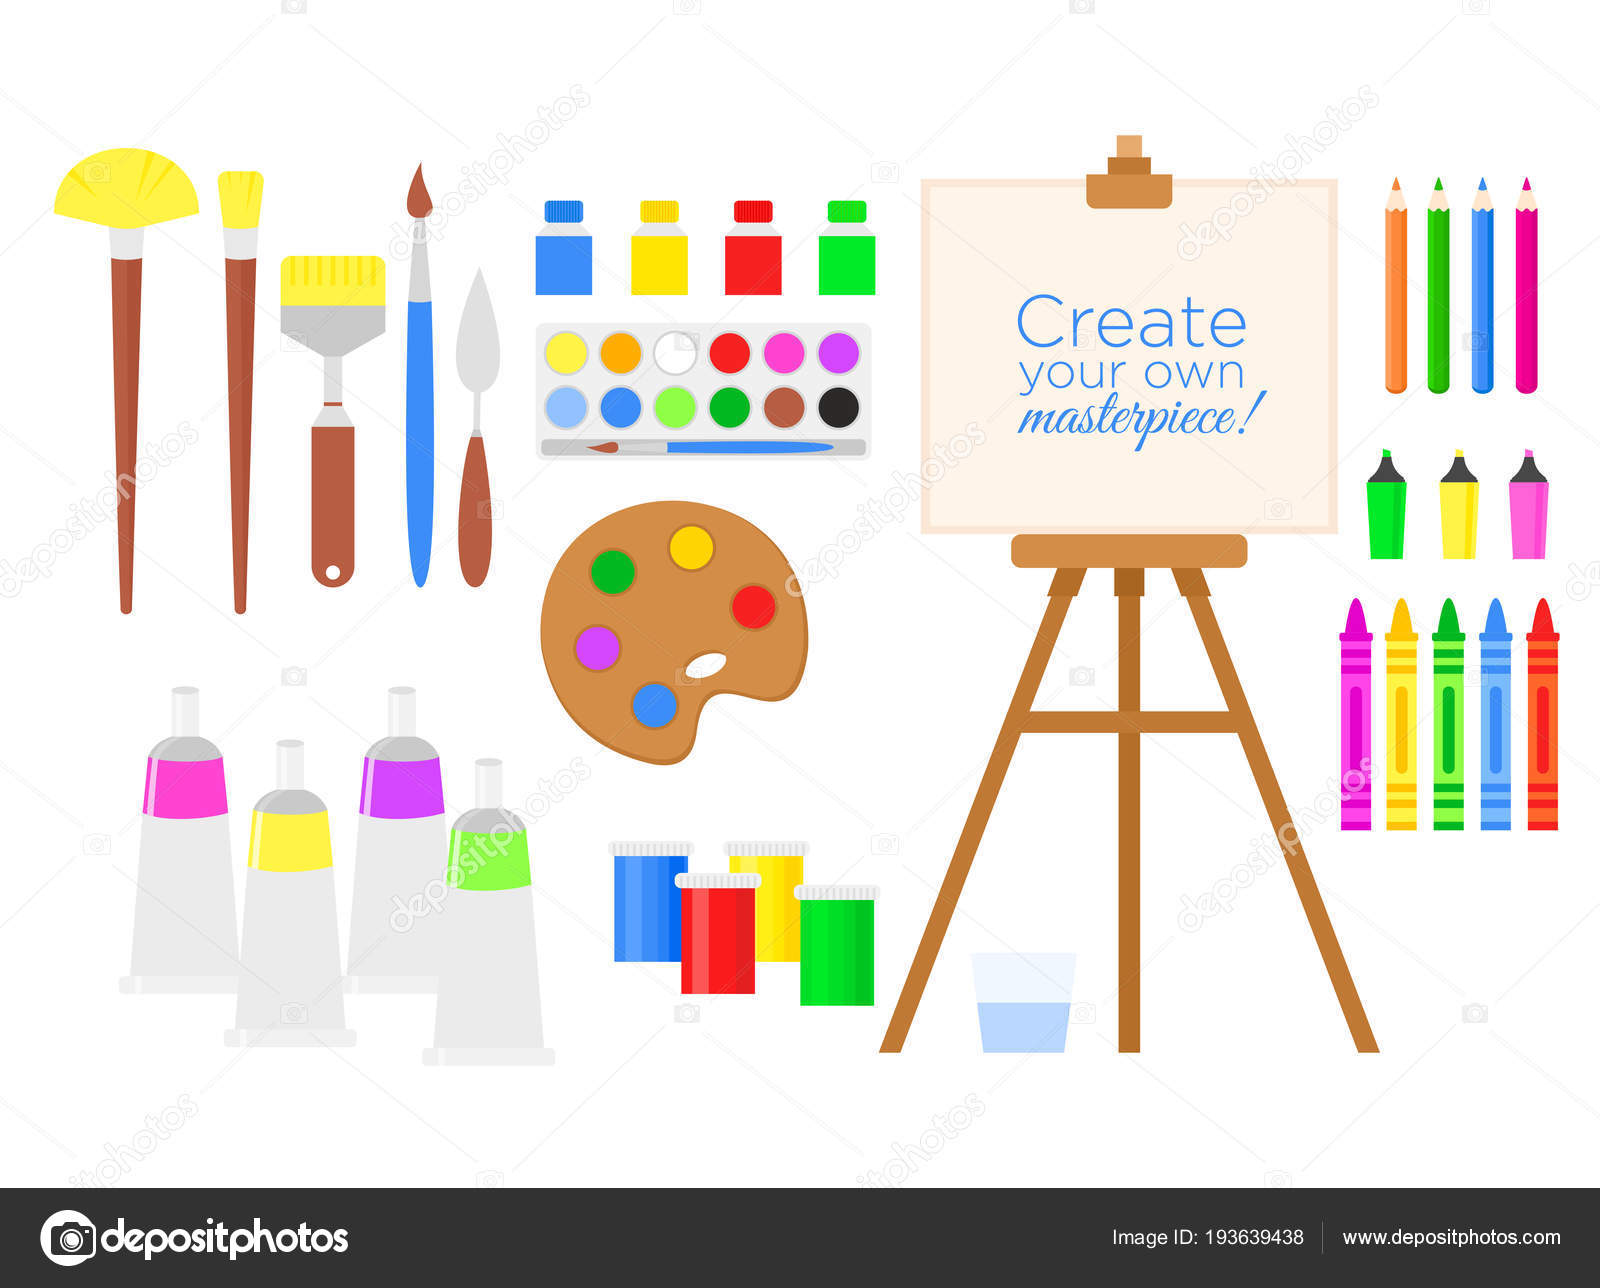 https://st3.depositphotos.com/12889260/19363/v/1600/depositphotos_193639438-stock-illustration-vector-illustration-set-of-tools.jpg